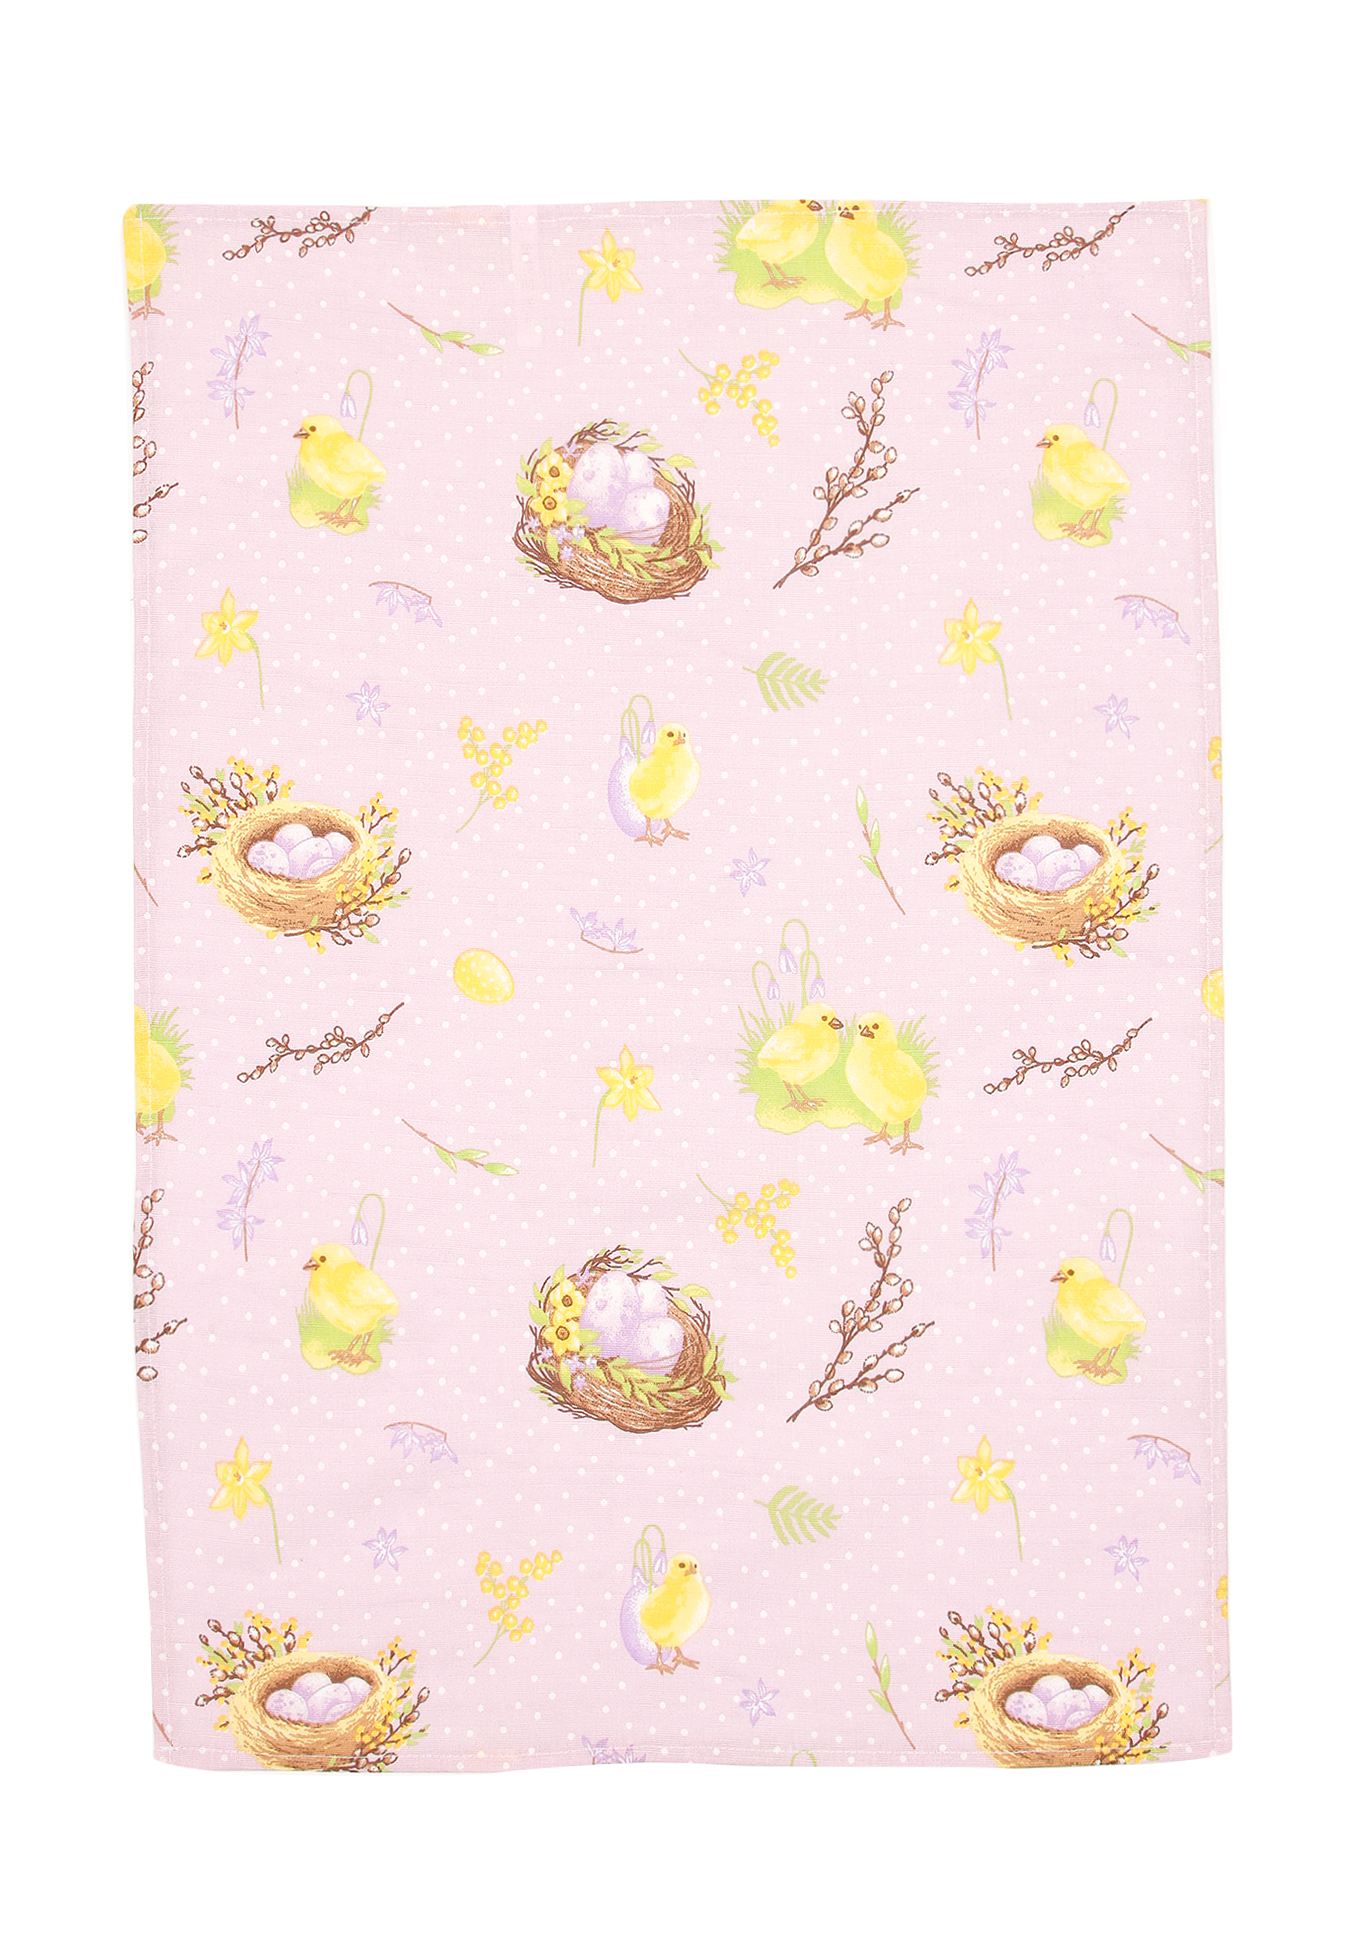 Комплект полотенец «Светлый Праздник», 5 шт. Василиса, цвет желтый, размер 47x61 - фото 6